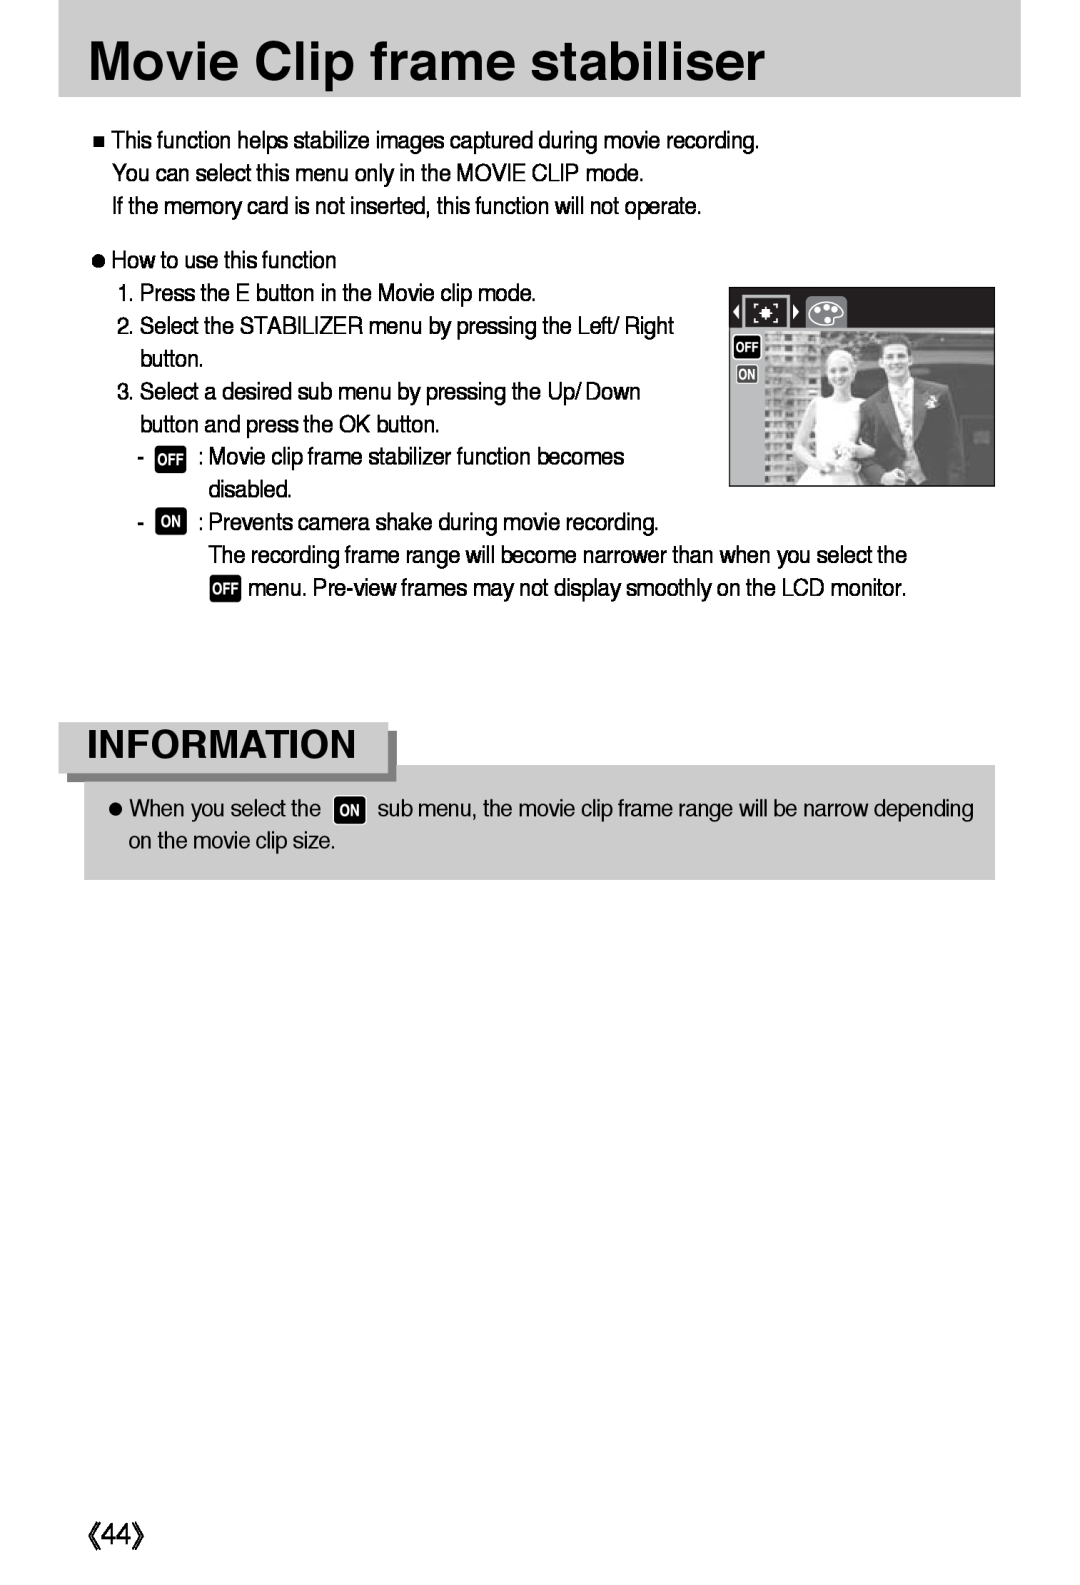 Samsung L50 user manual Movie Clip frame stabiliser, 《44》, Information 